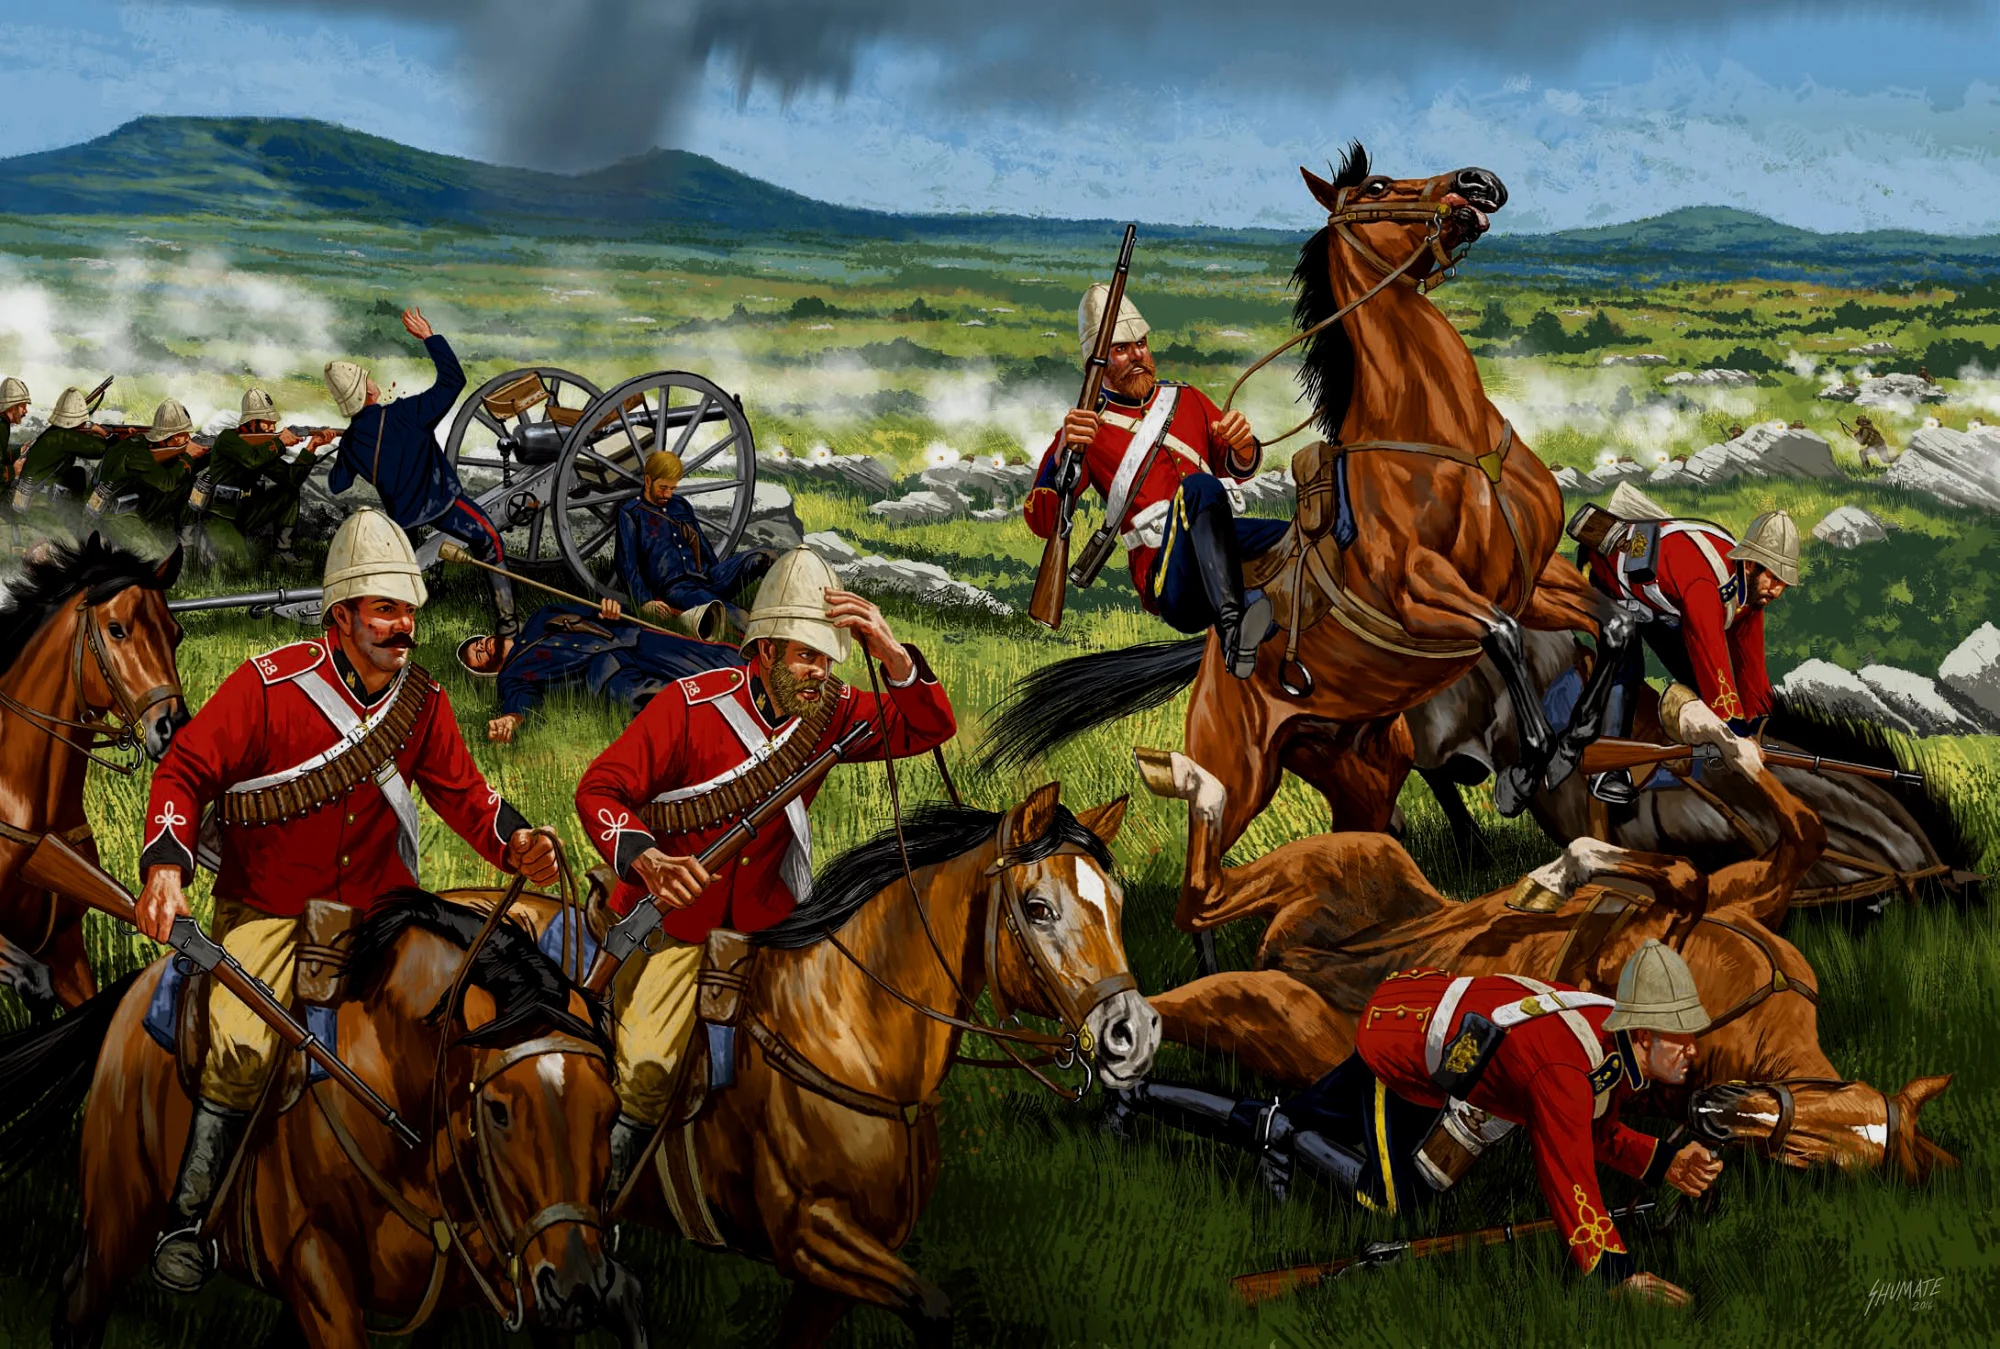 因戈戈之战中，英军骑兵军官布朗洛少校试图让骑兵部队从友军侧面冲锋，避免友军被布尔人包围。然而在骑兵于开阔地上部署队形的时候遭到了布尔火枪的准确射击，在开始冲锋前骑兵就几乎全军覆没